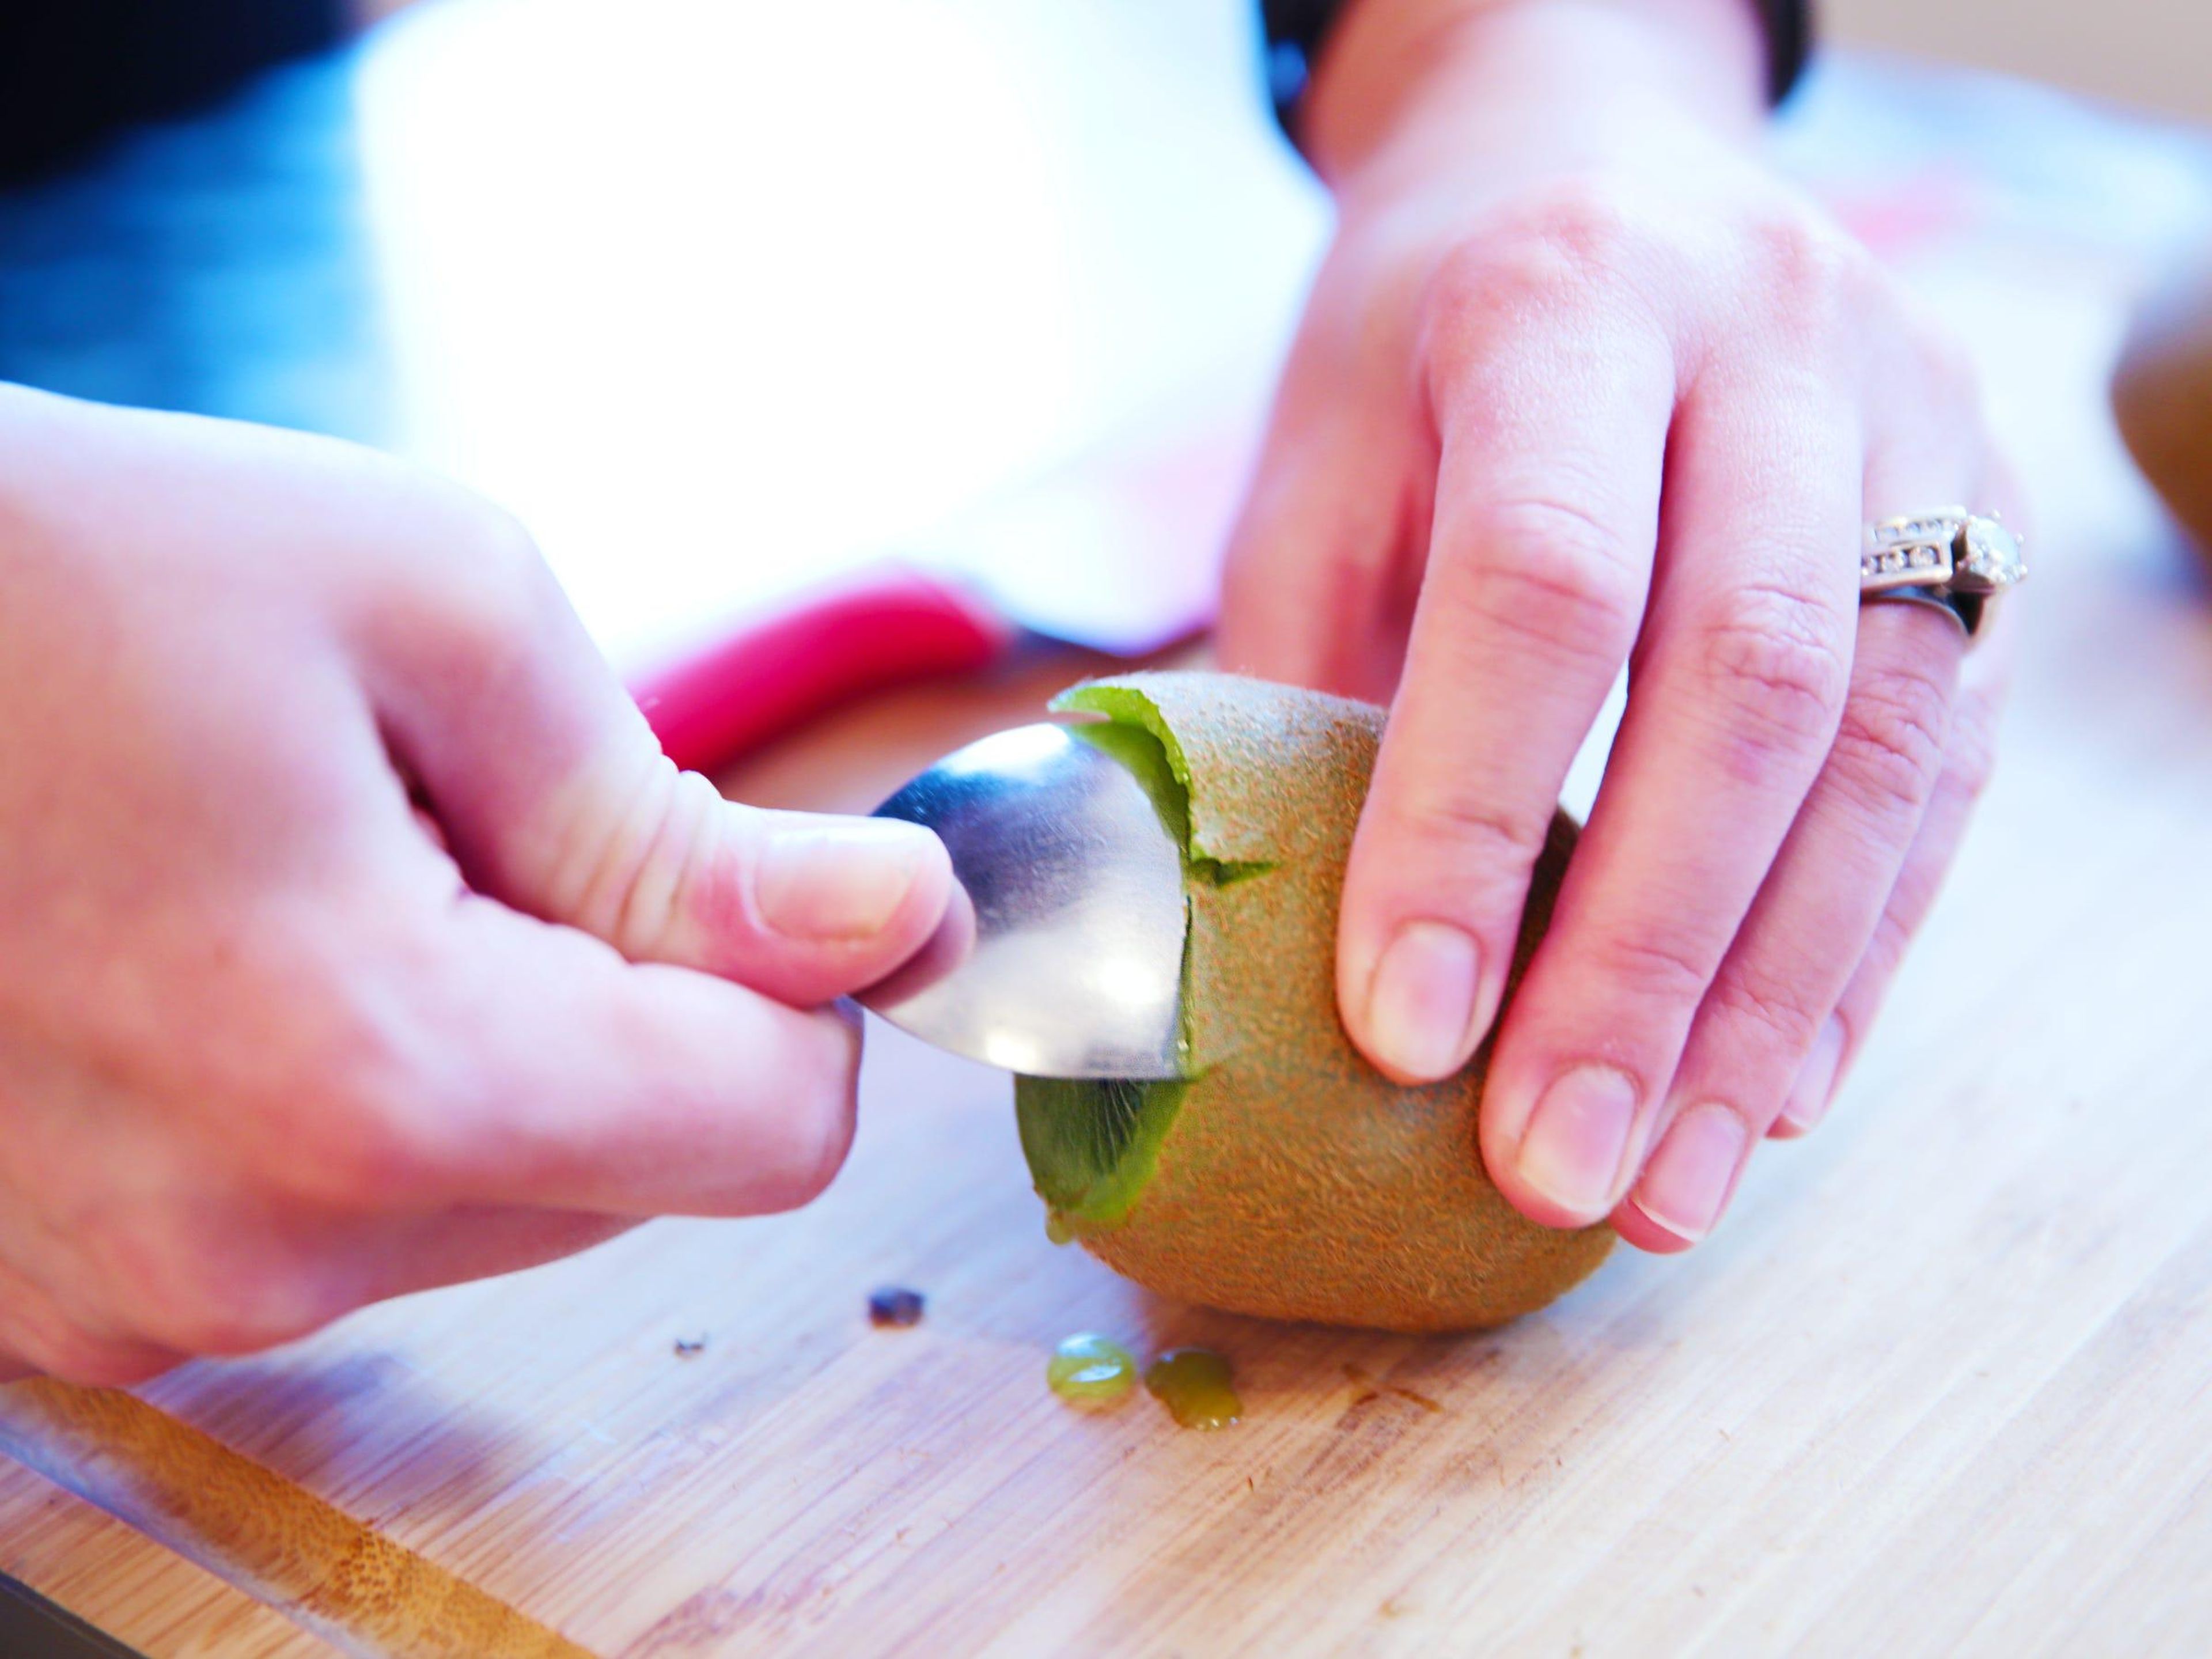 Una cuchara puede ayudar a separar el kiwi de su piel.